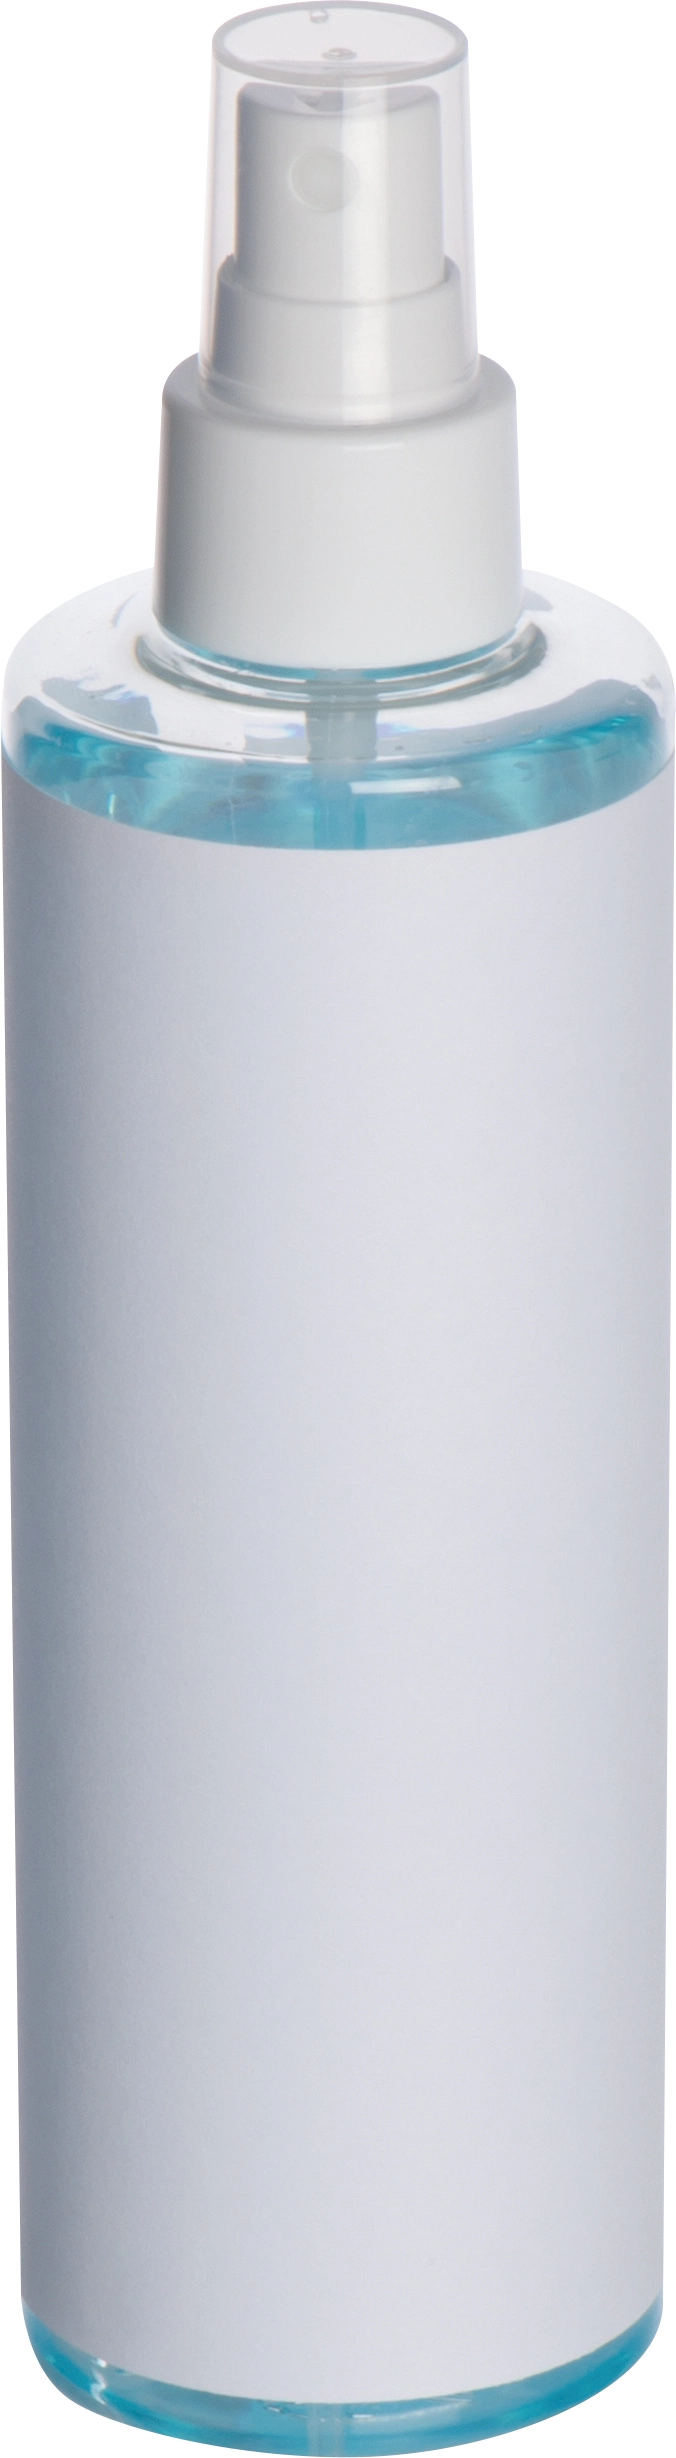 Spray dezynfekujący 250 ml GM-53939-06